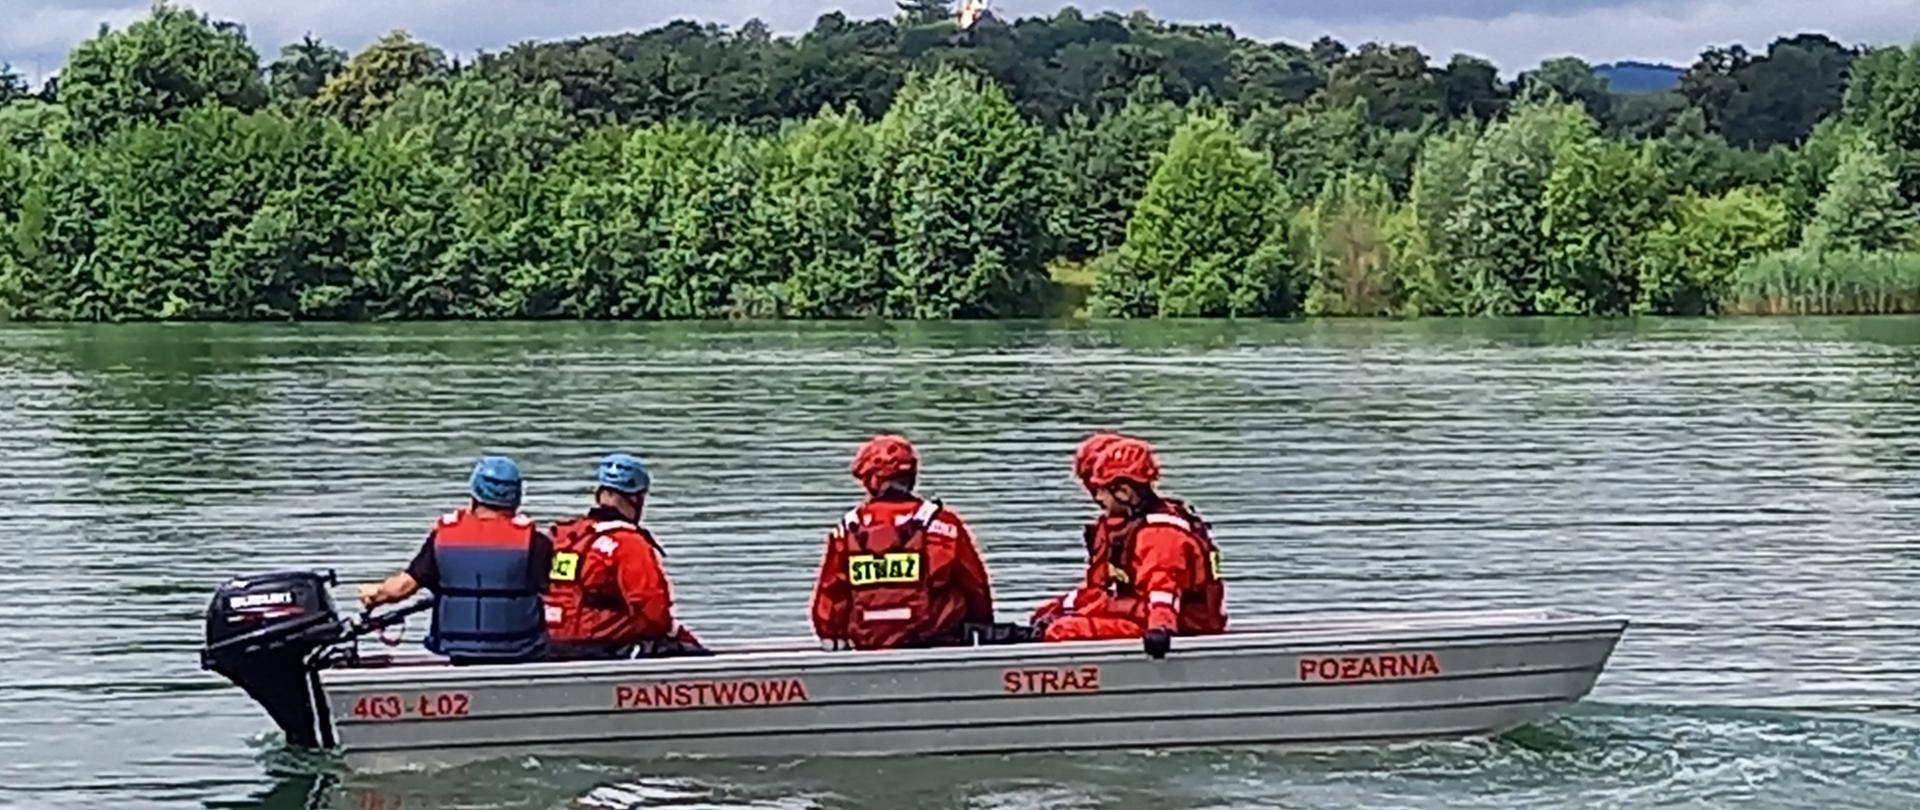 Strażacy w łodzi ćwiczący na zbiorniku wodnym ratownictwo wodne. W oddali brzeg porośnięty drzewami.